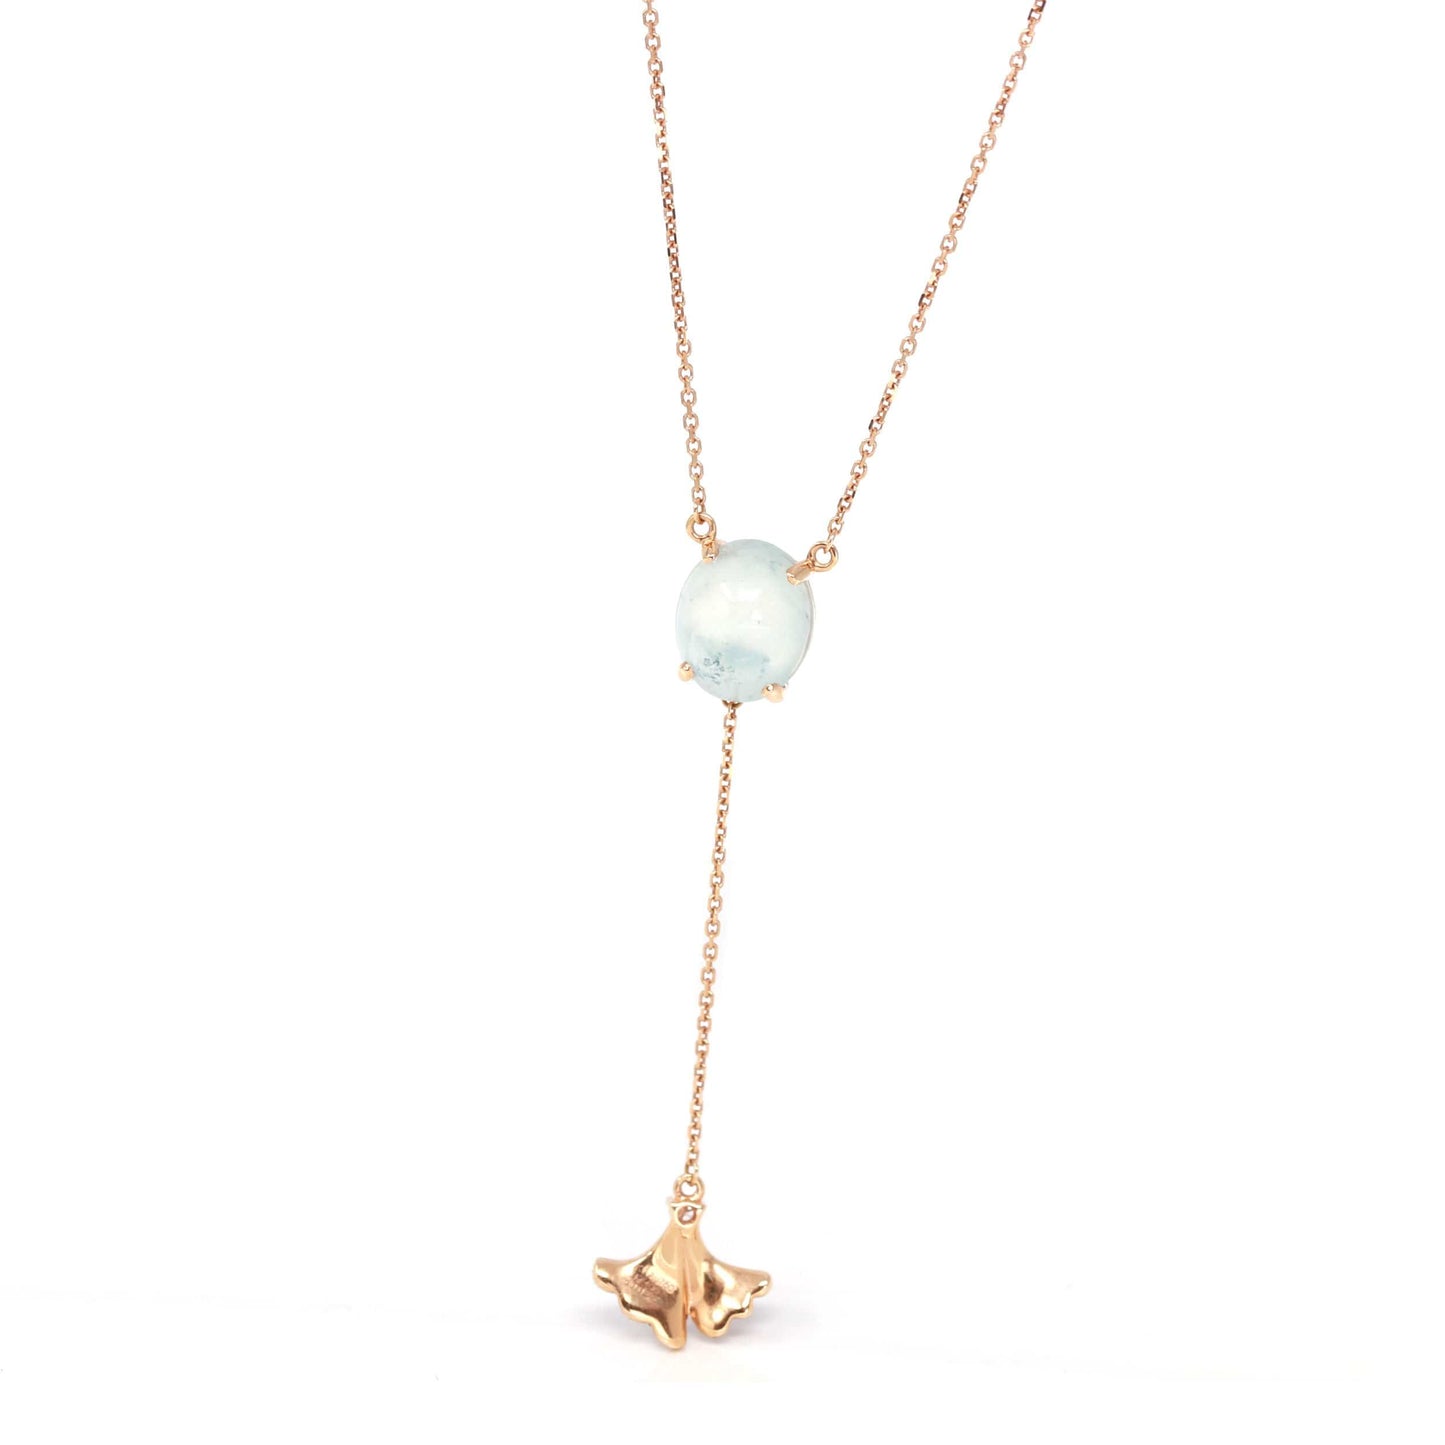 RealJade™ "Morning Glory" 18k Rose Gold Genuine Burmese Jadeite Necklace With Diamonds